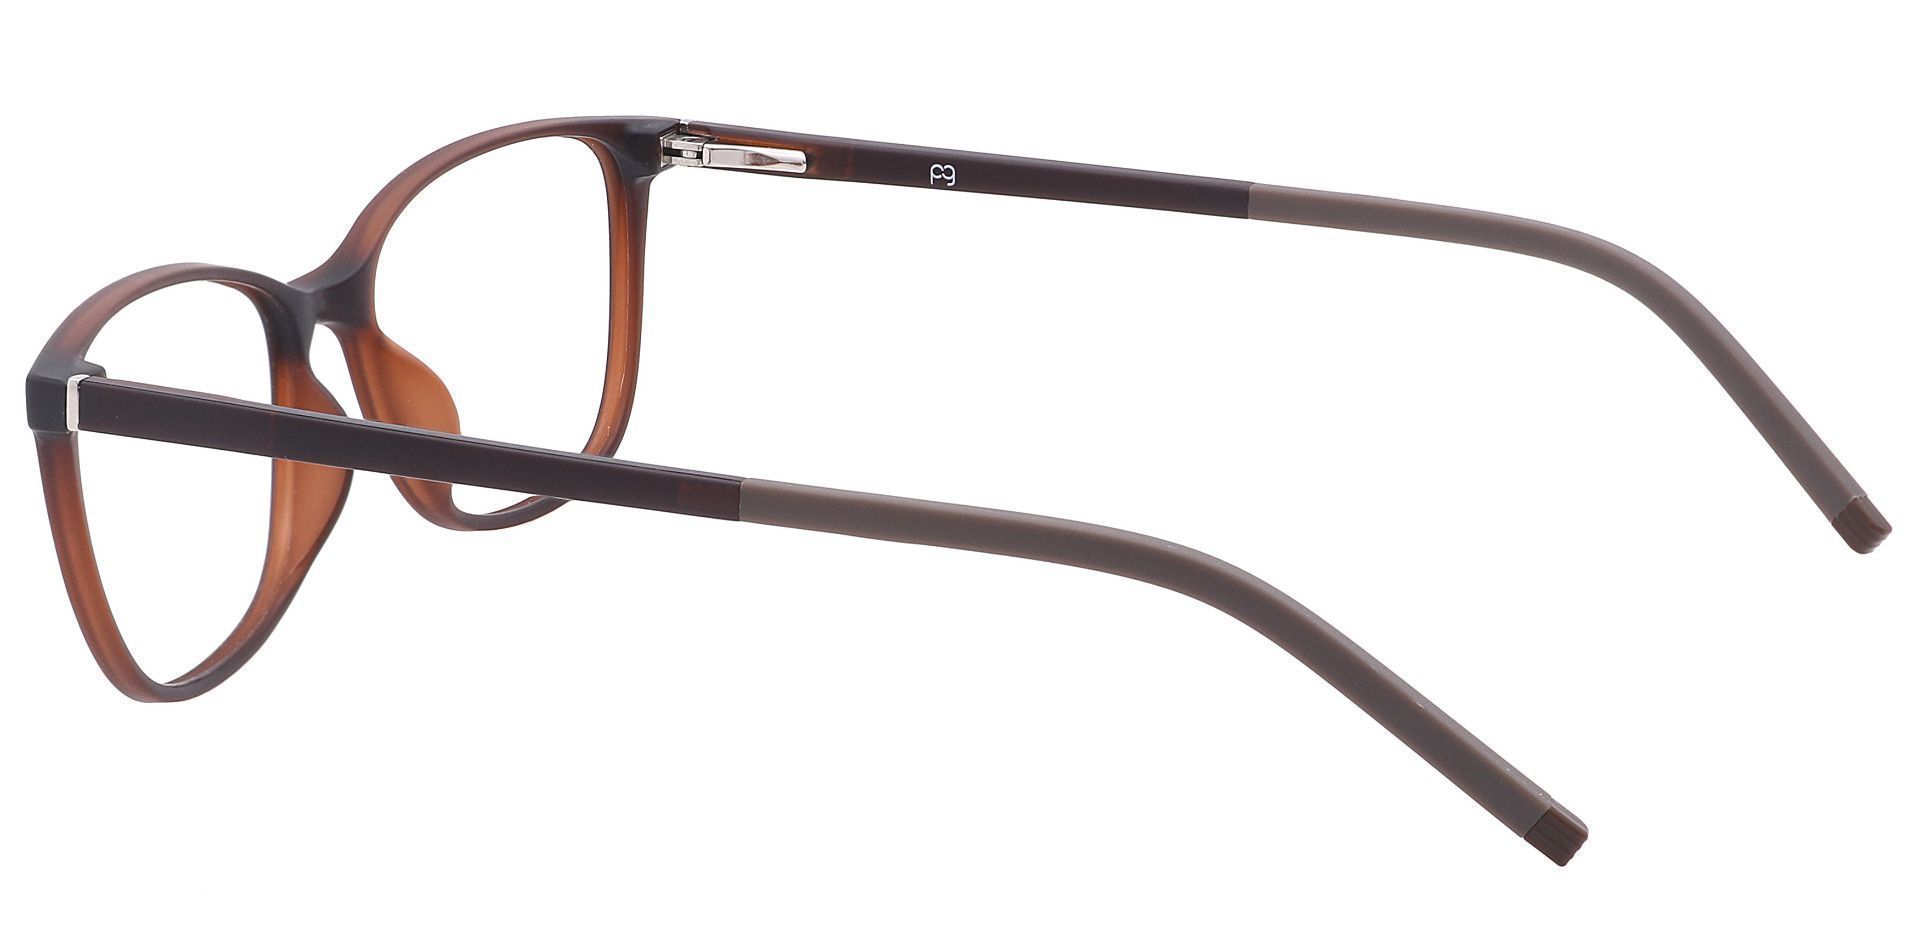 Danica Square Progressive Glasses - Brown